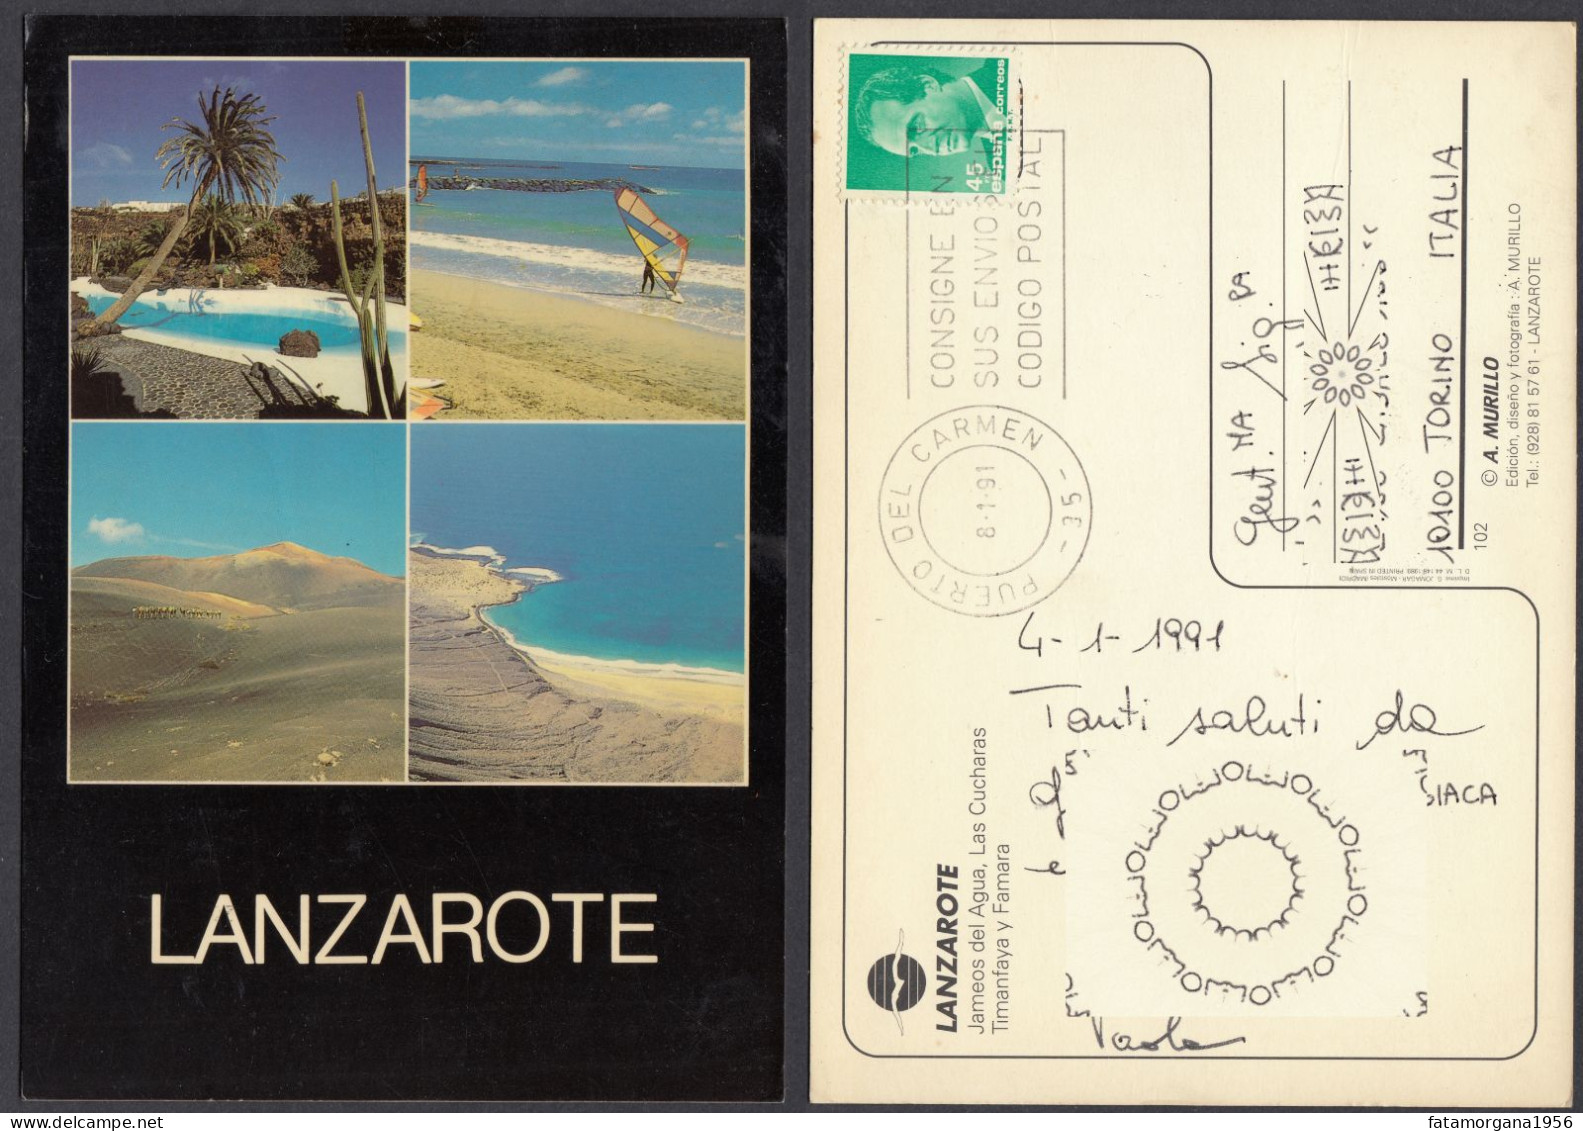 SPAGNA - LANZAROTE - 1991 - Cartolina Riproducente Vedute Dell'Isola, Affrancata Con Yvert 2420. - Lanzarote